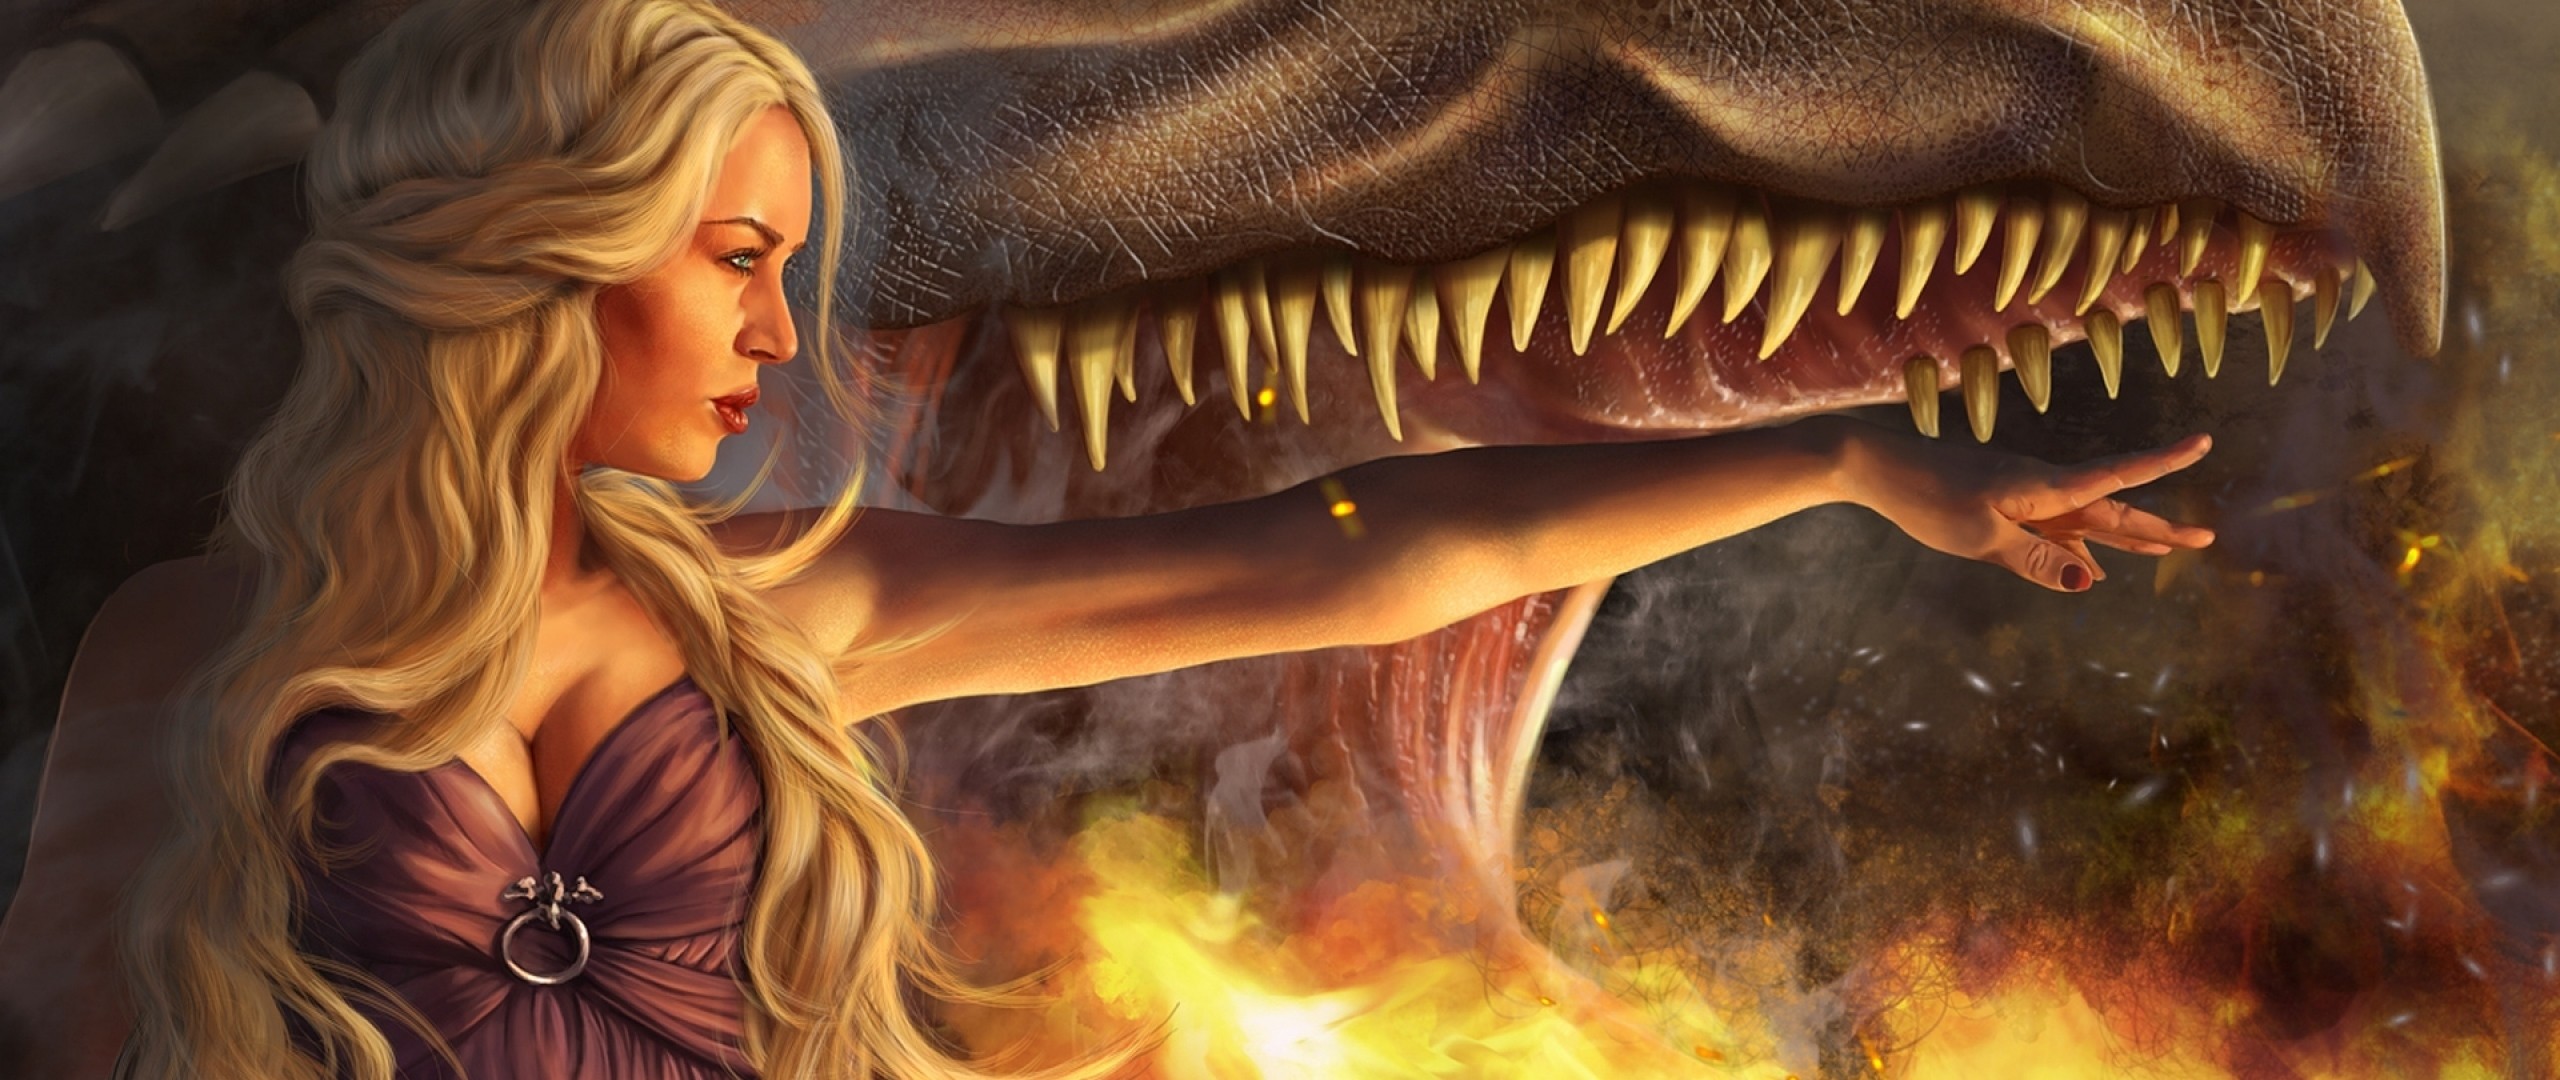 Preview wallpaper game of thrones, daenerys targaryen, girl, blonde, dragon, jaws